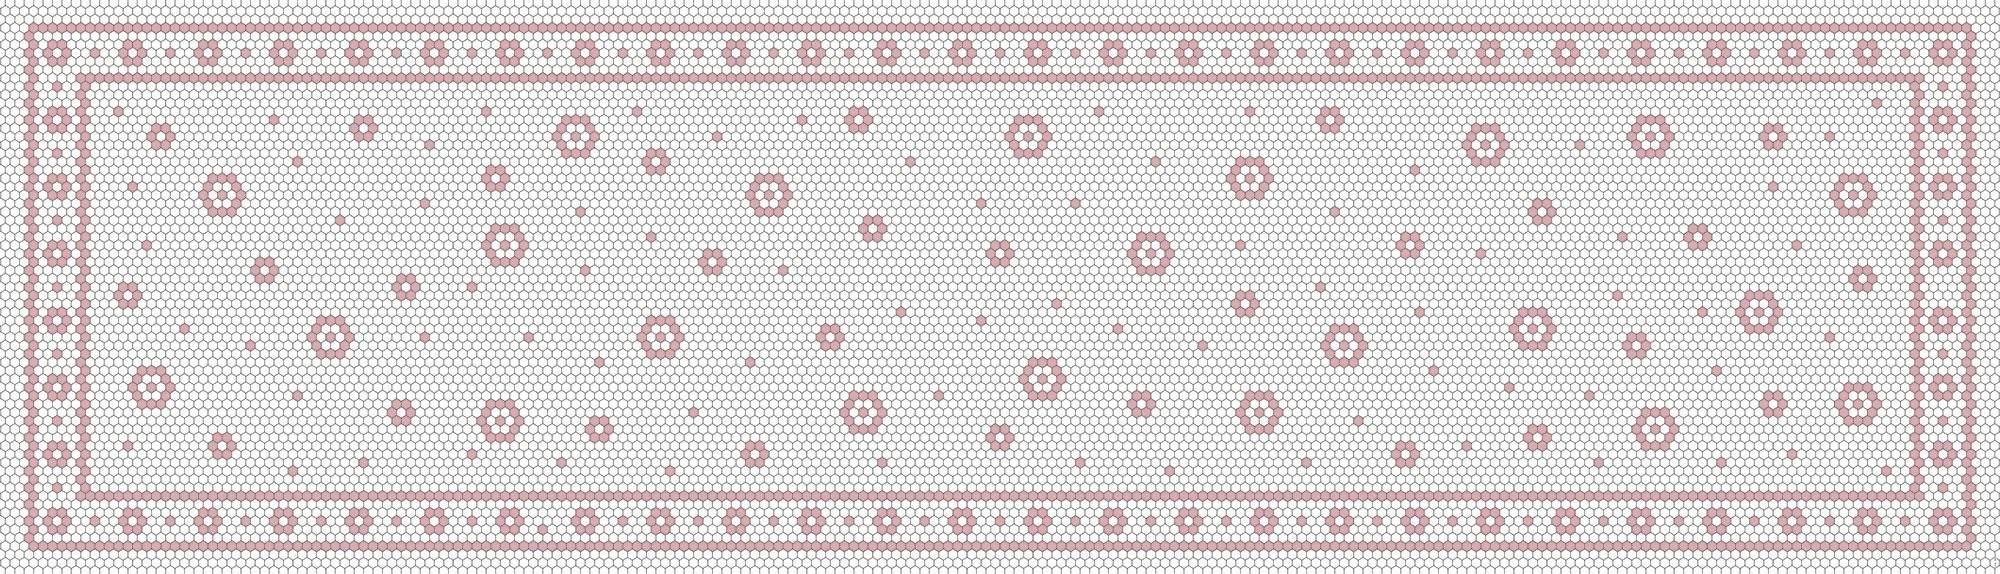 Tapis de vinyle runner mosaique fleur blush - vinyl runner carpets blush mosaic flower